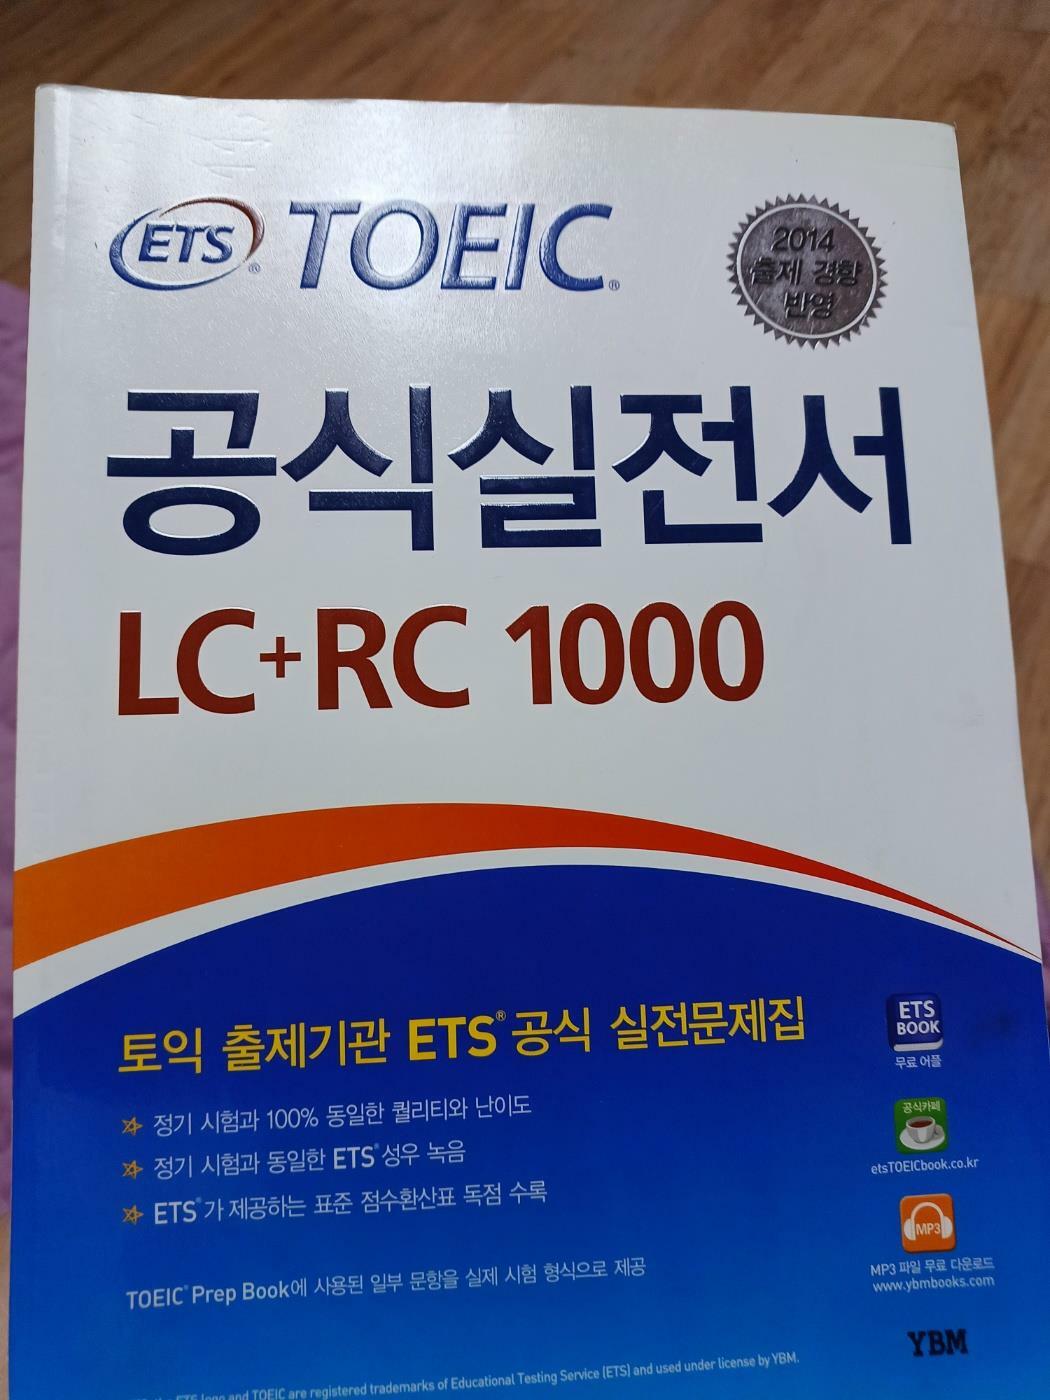 [중고] ETS TOEIC 공식실전서 LC + RC 1000 (최신경향)